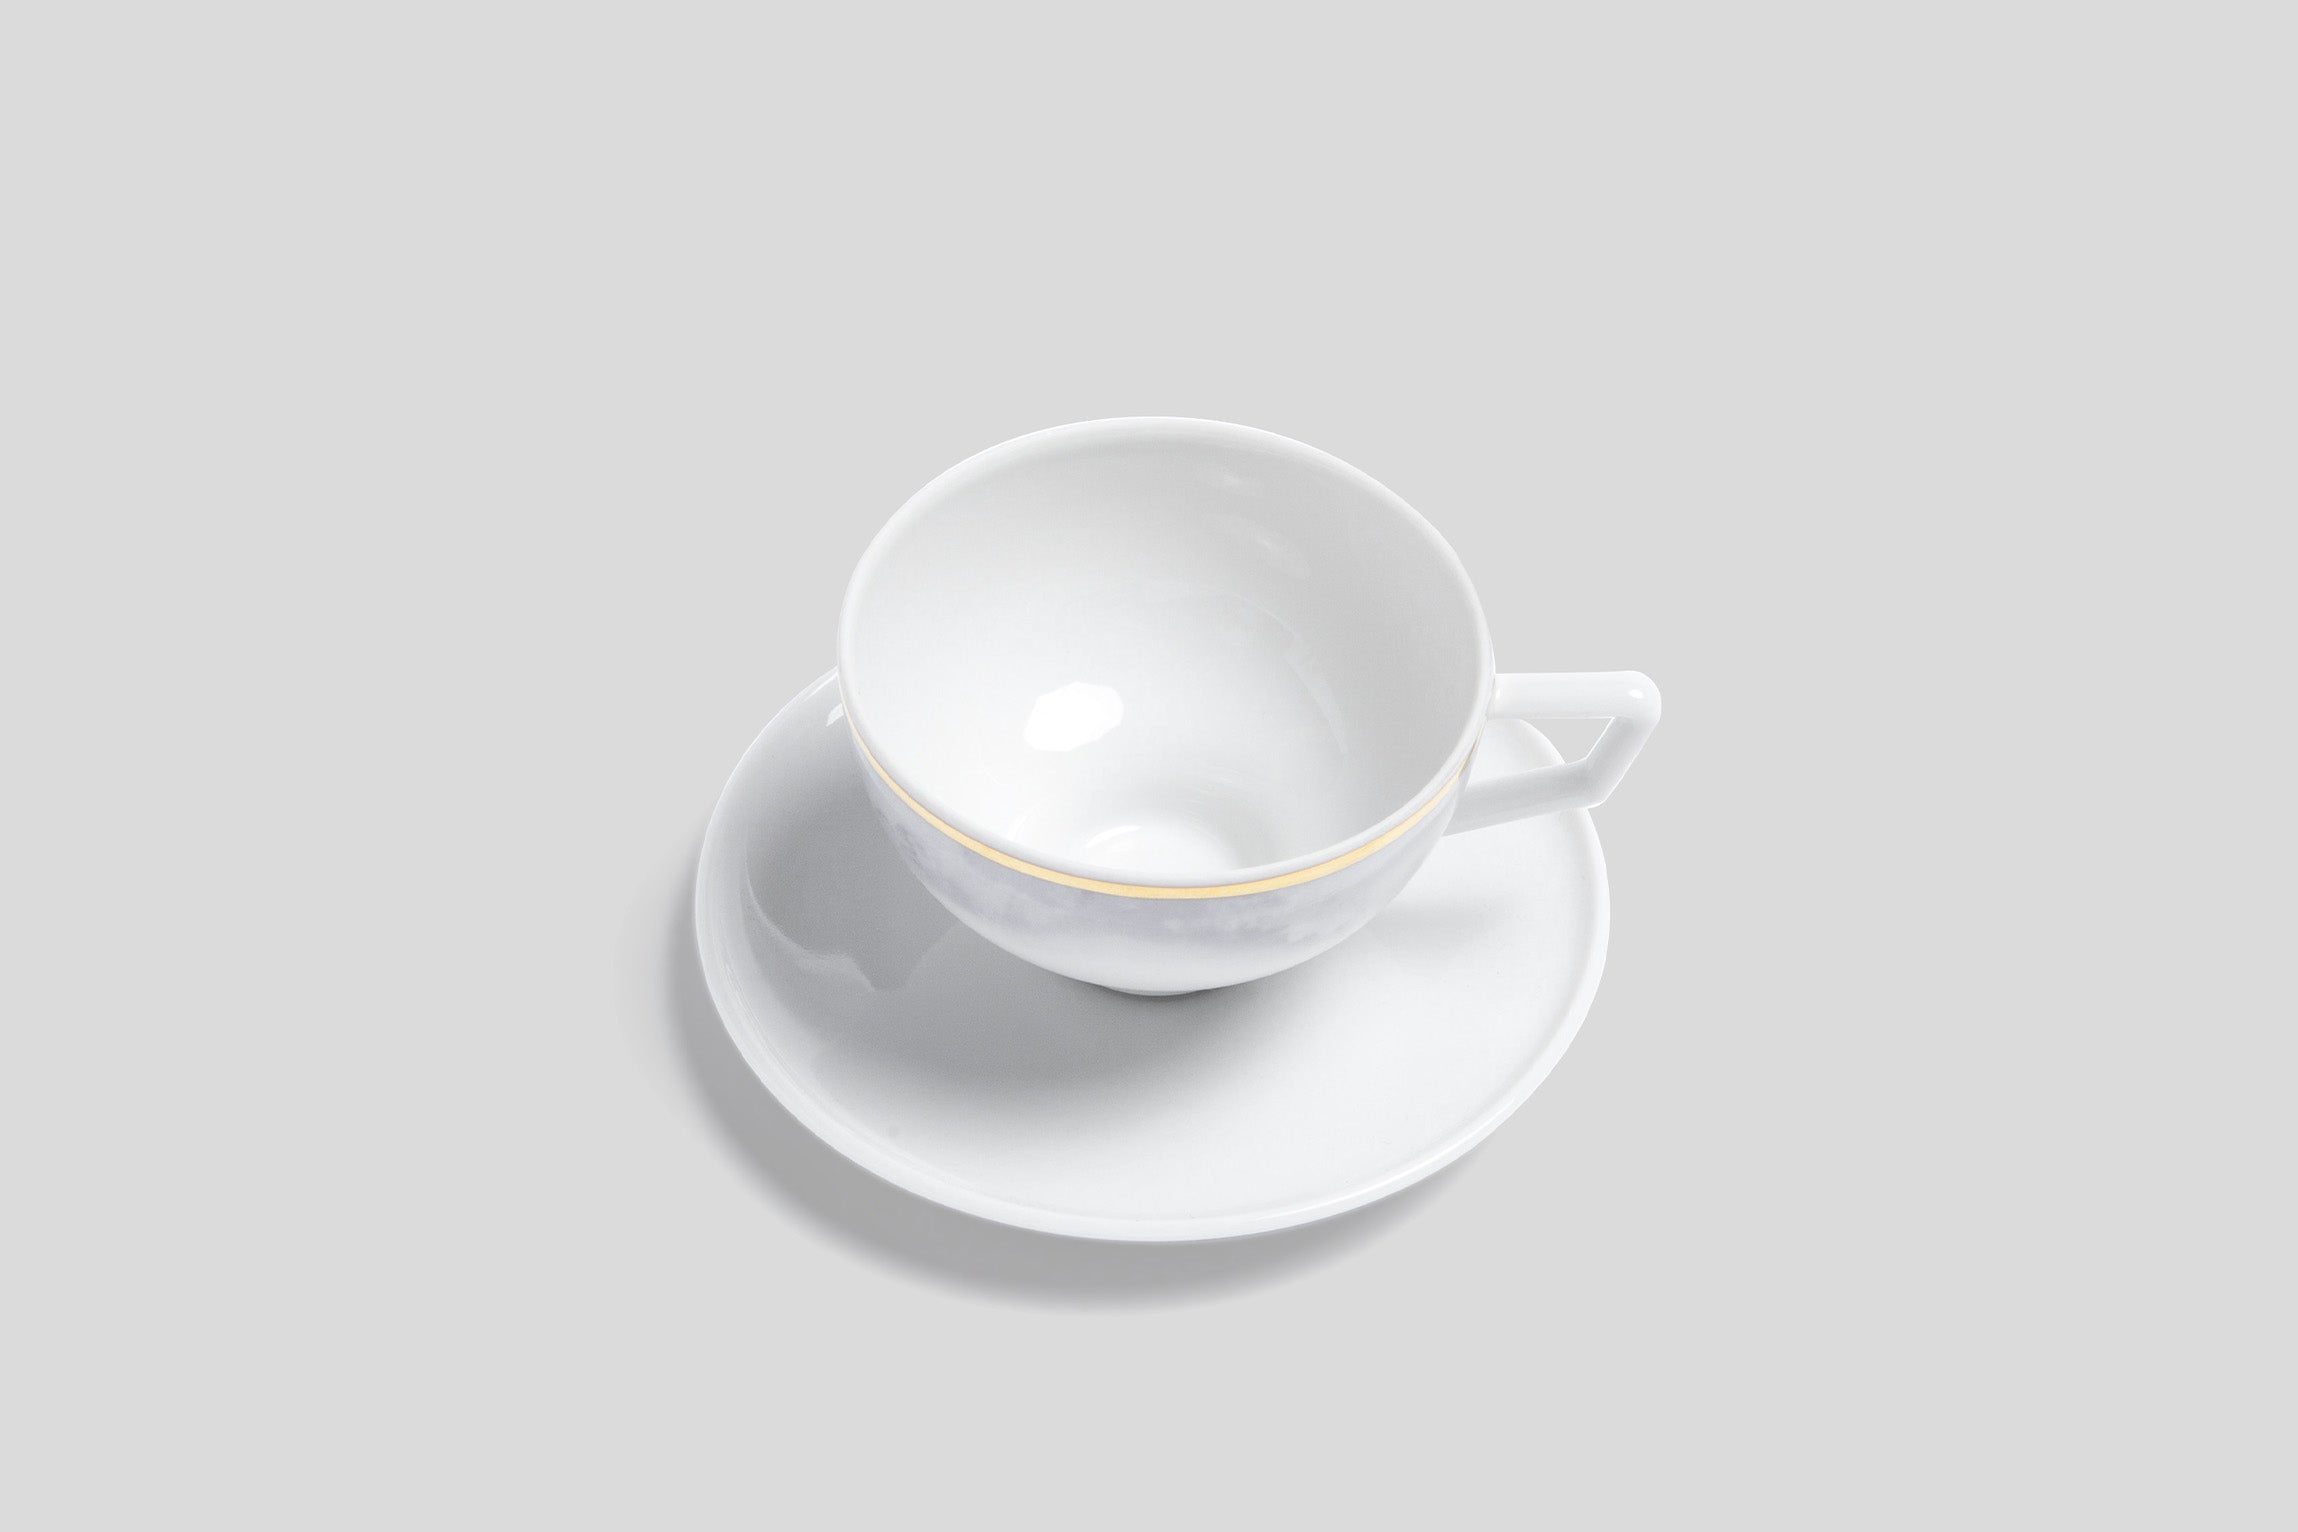 Designer-Luxury-Modern-Bodo Sperlein Pomona Tempest Espresso Cup & Saucer-Bodo Sperlein-Bodo Sperlein-Bone China-Designer-Luxury-Modern-Tasse-Becher-Kaffee Tasse